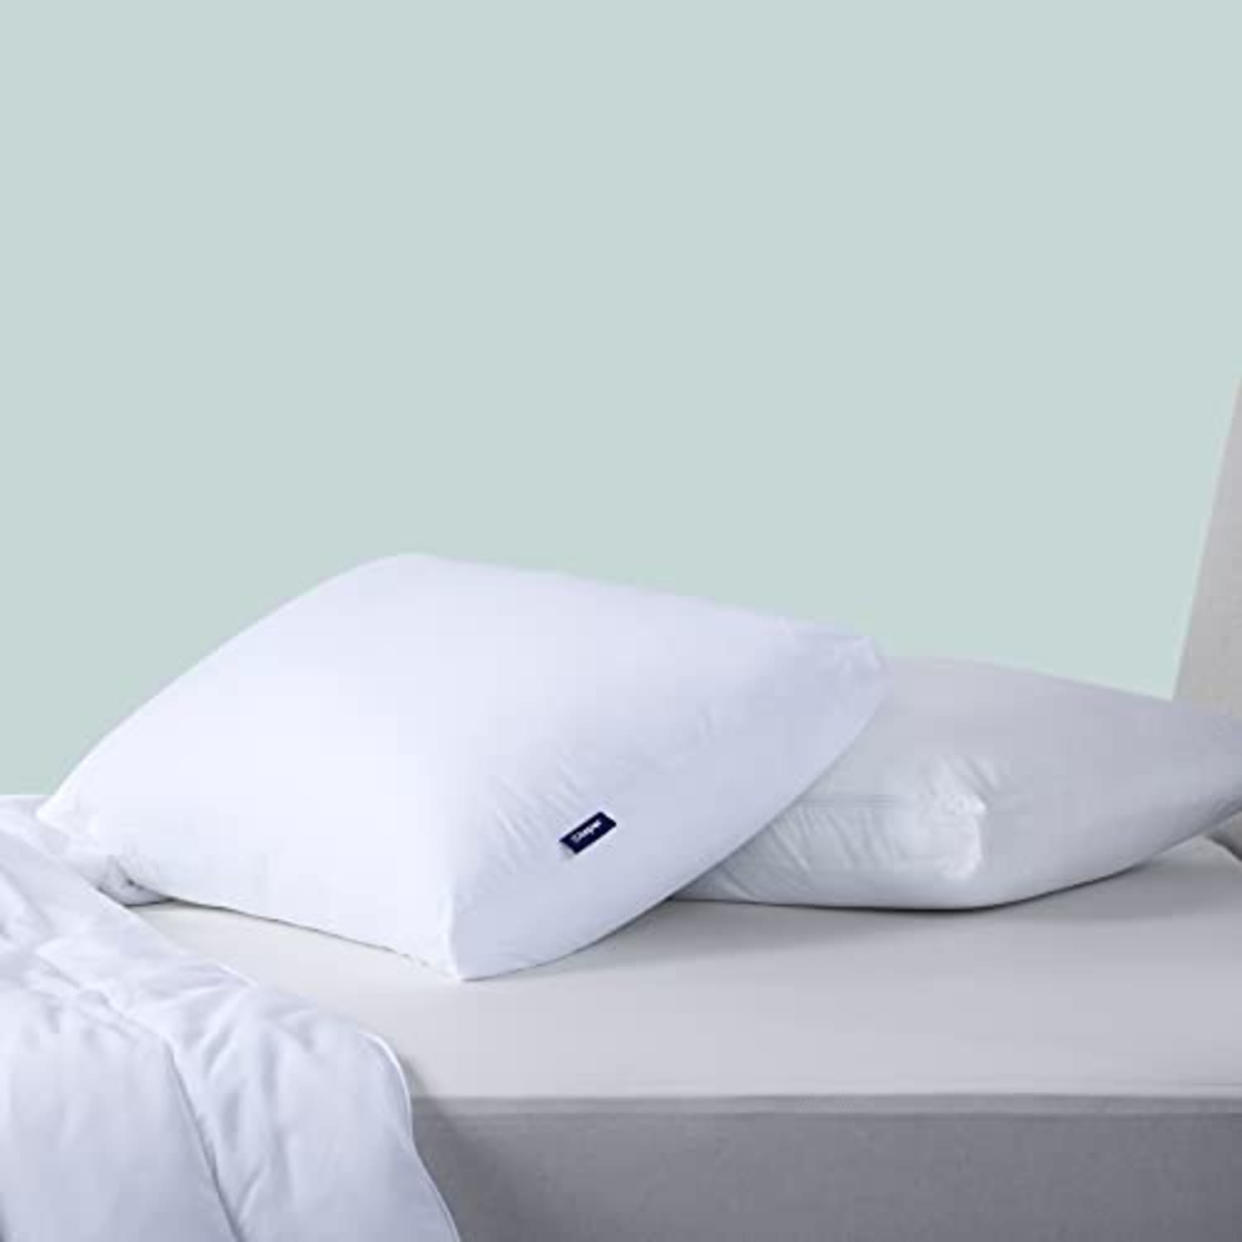 Casper Original Pillow for Sleeping, Standard, White, Two Pack (AMAZON)